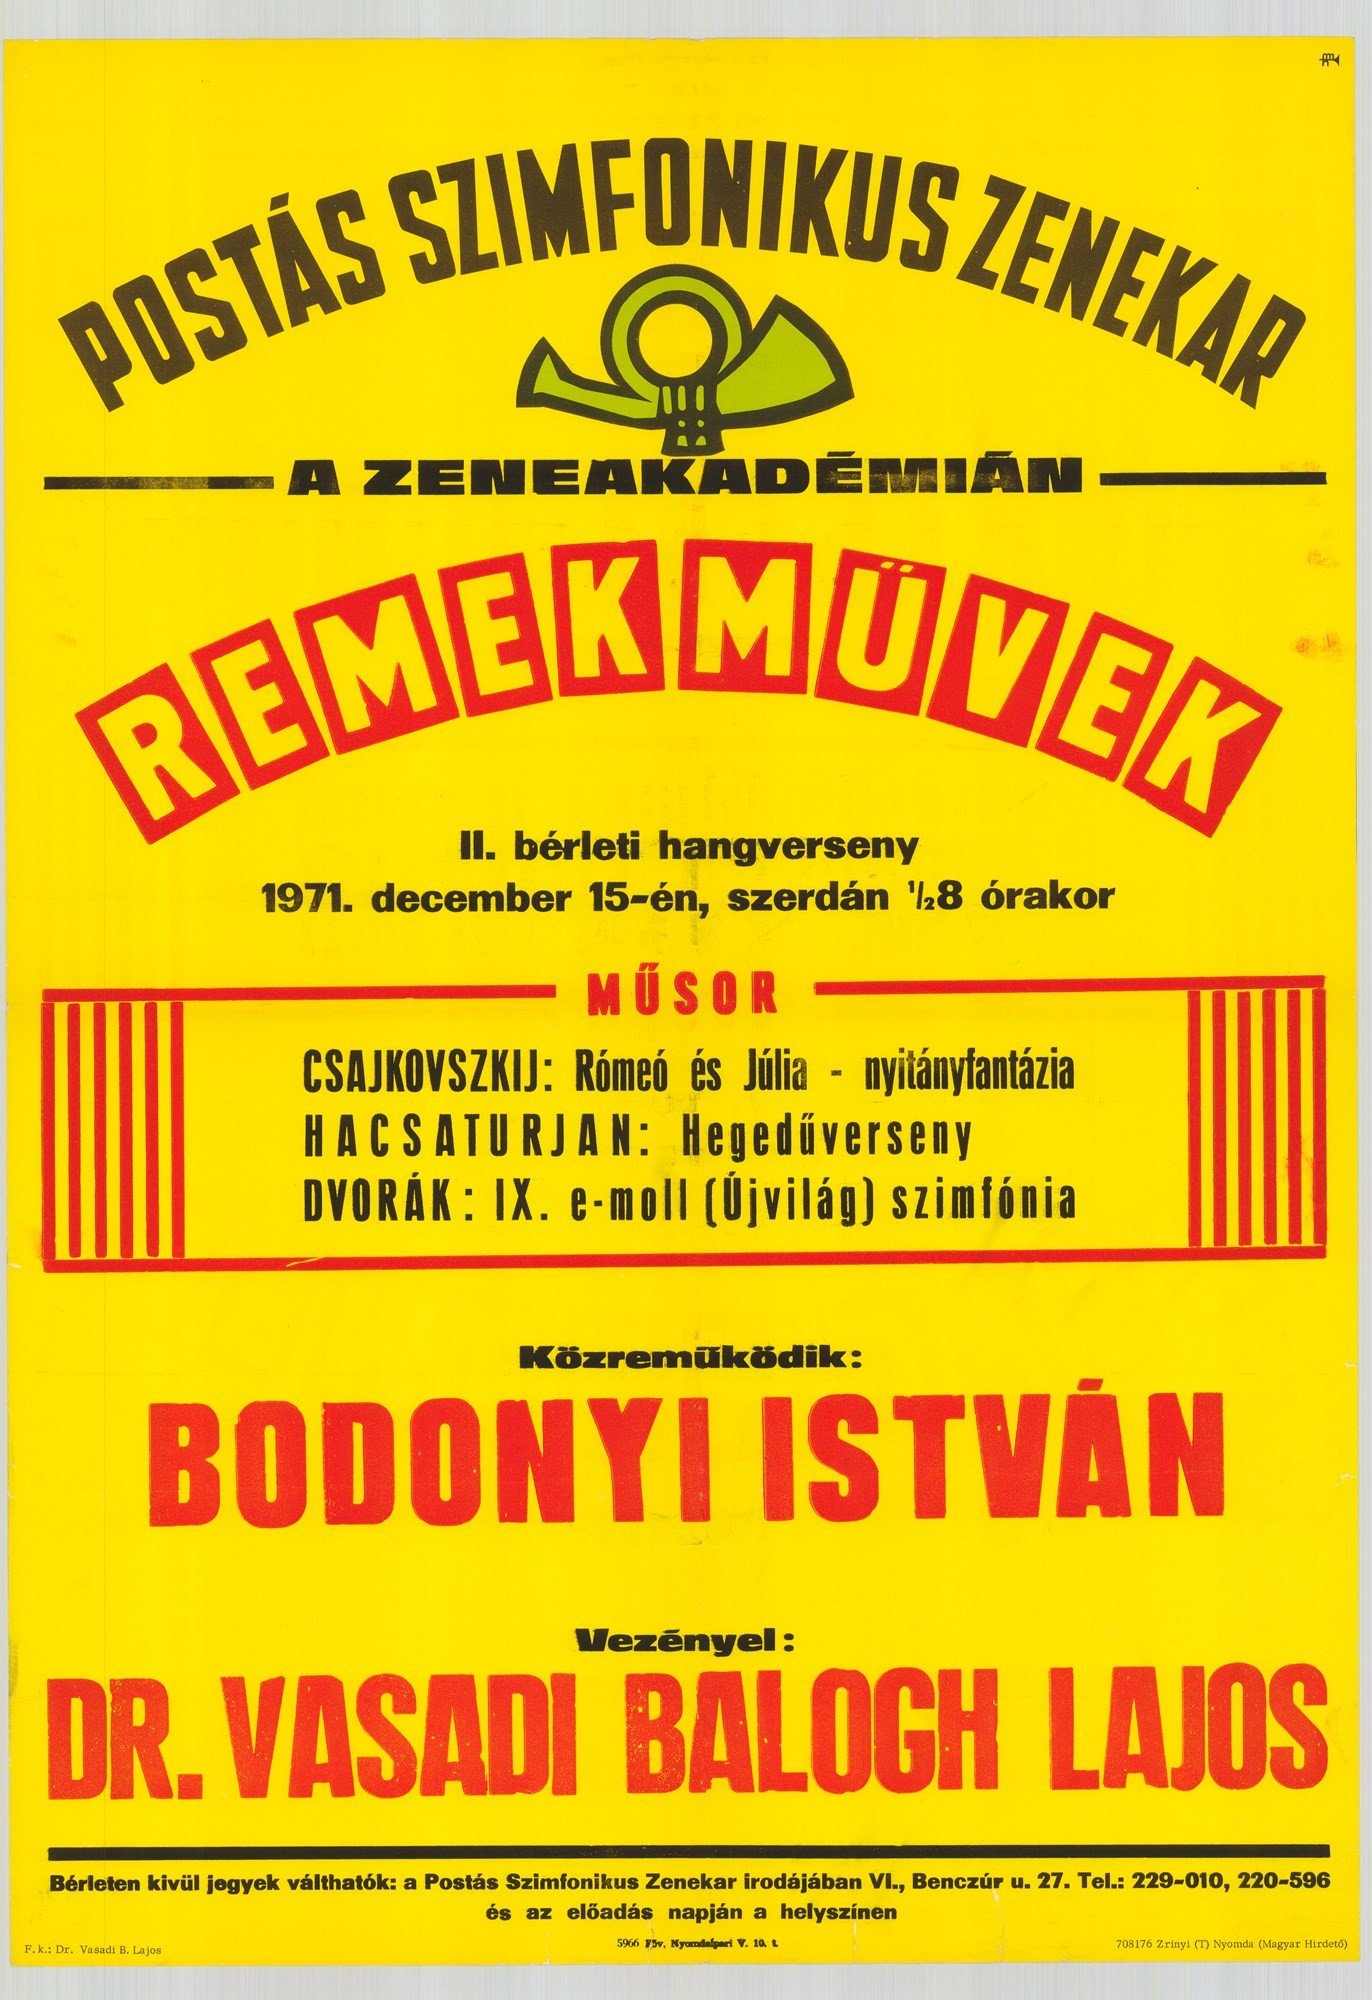 Plakát - Postás Szimfonikus Zenekar a Zeneakadémián, Remekművek, 1971 (Postamúzeum CC BY-NC-SA)